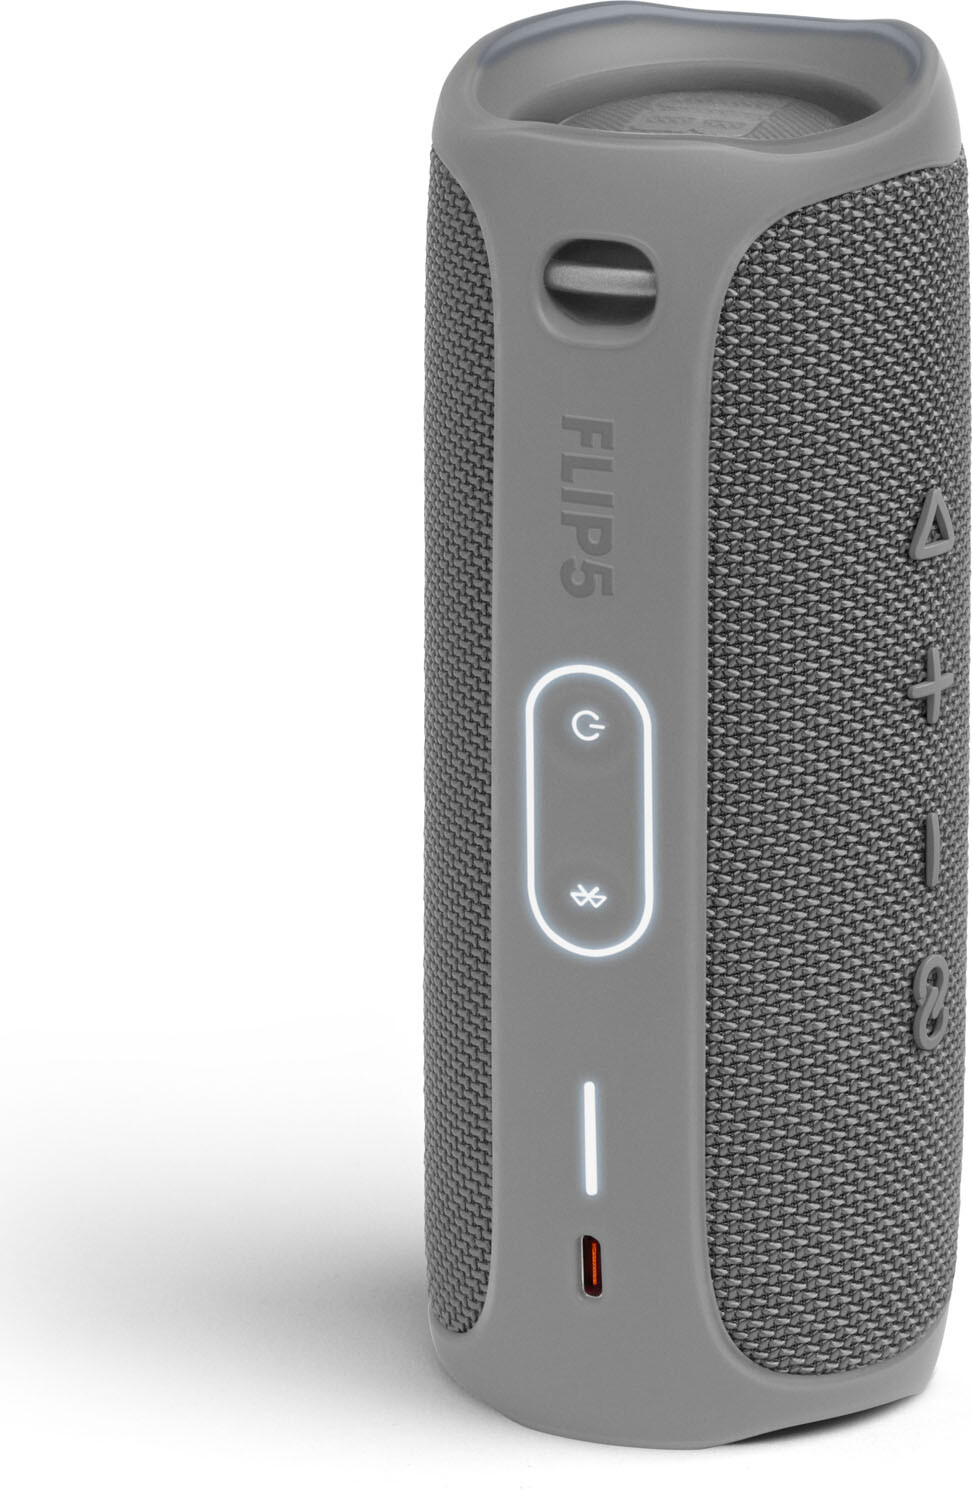 Портативная акустика JBL Flip 5 Gray (Серый)